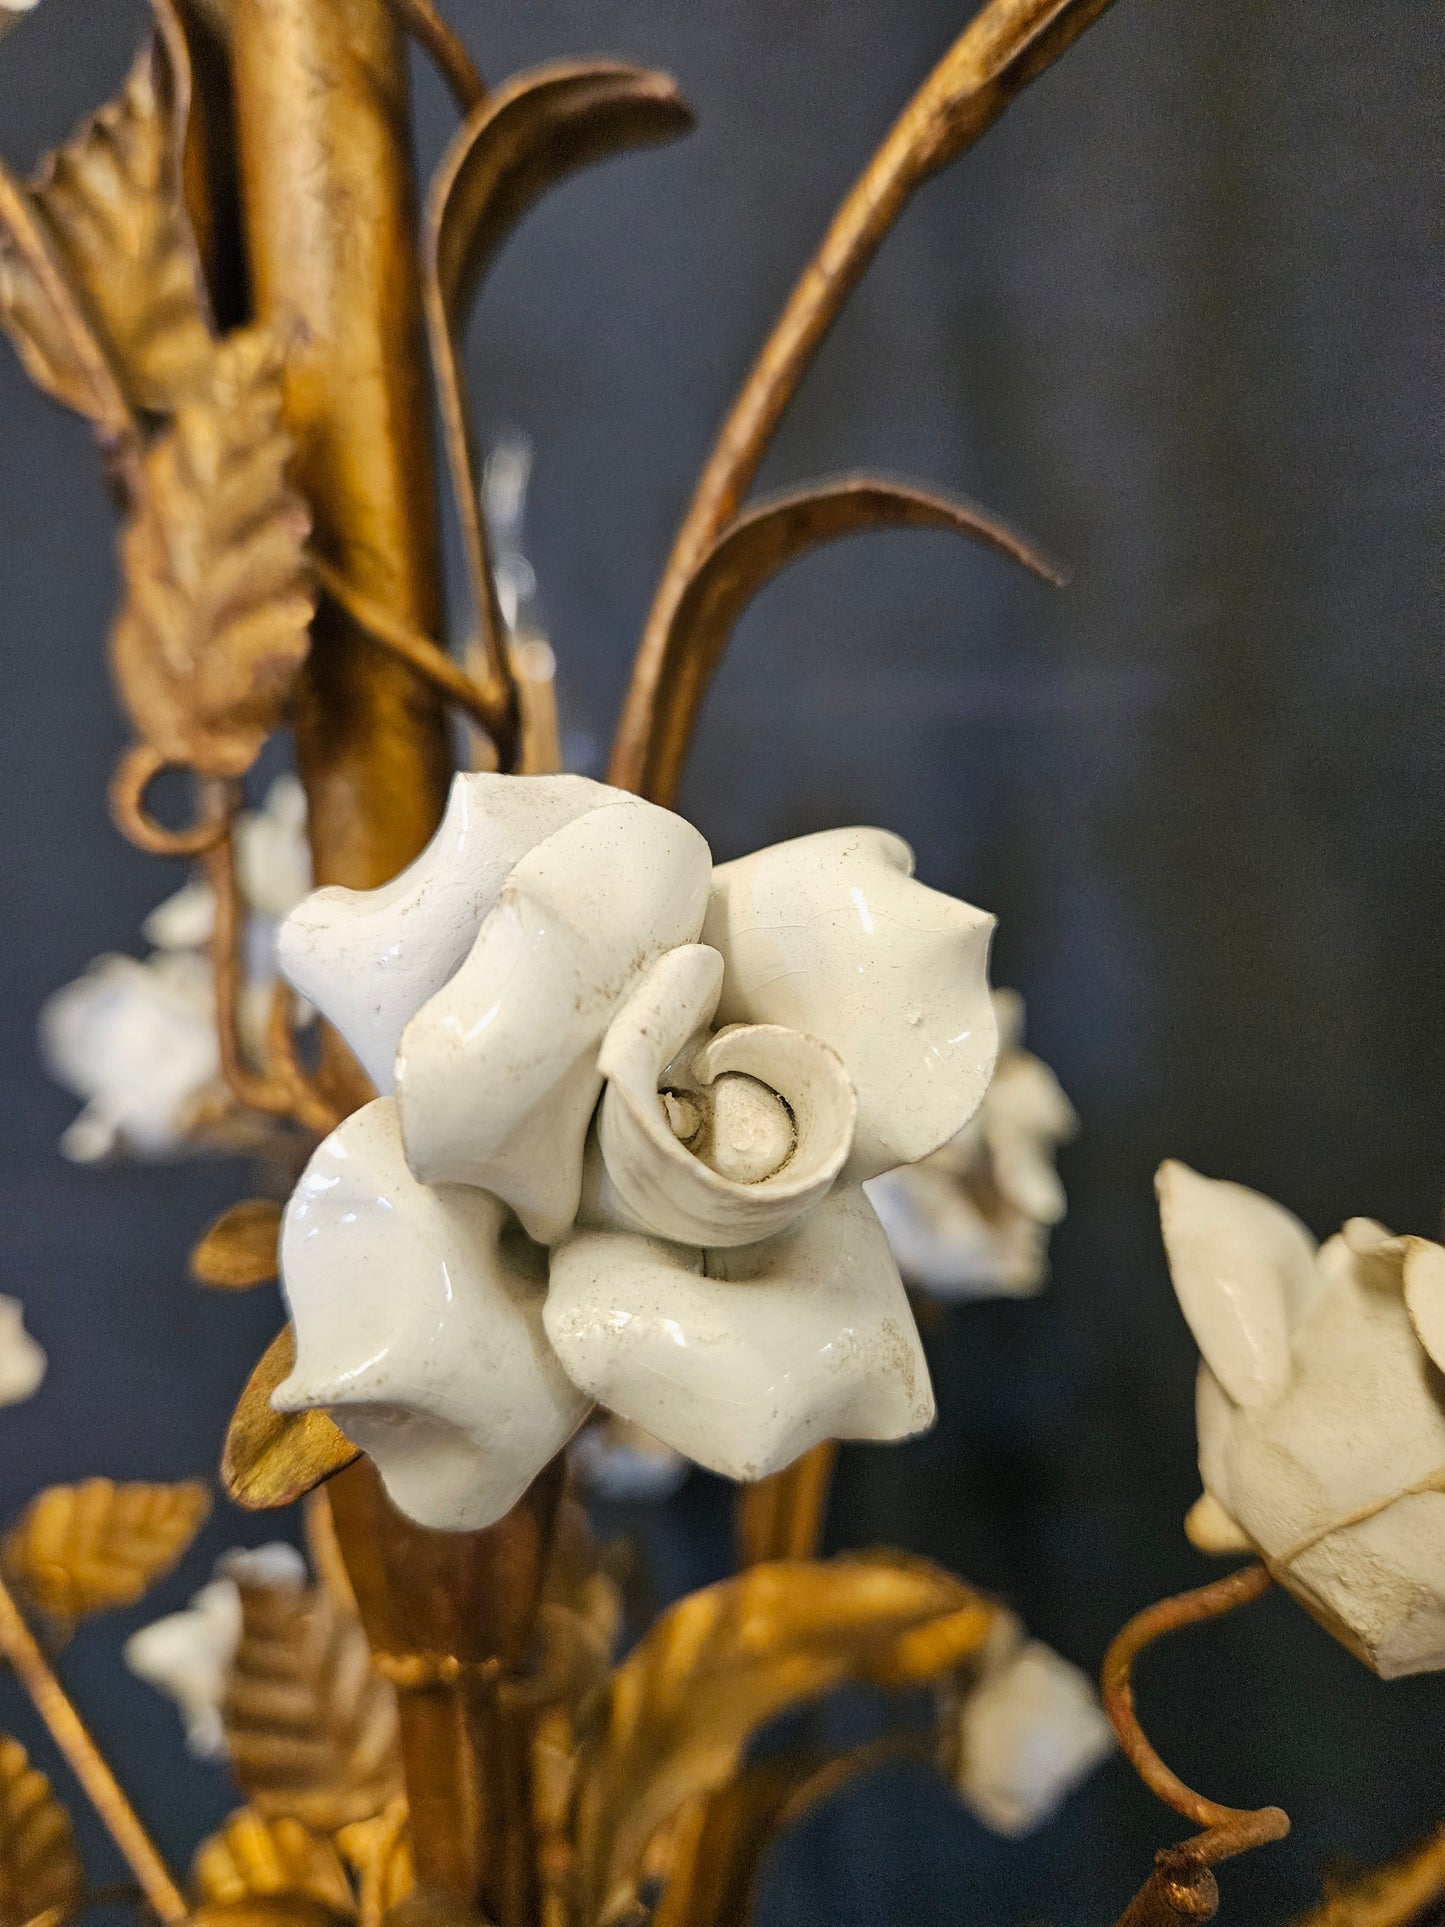 view of porceline flower